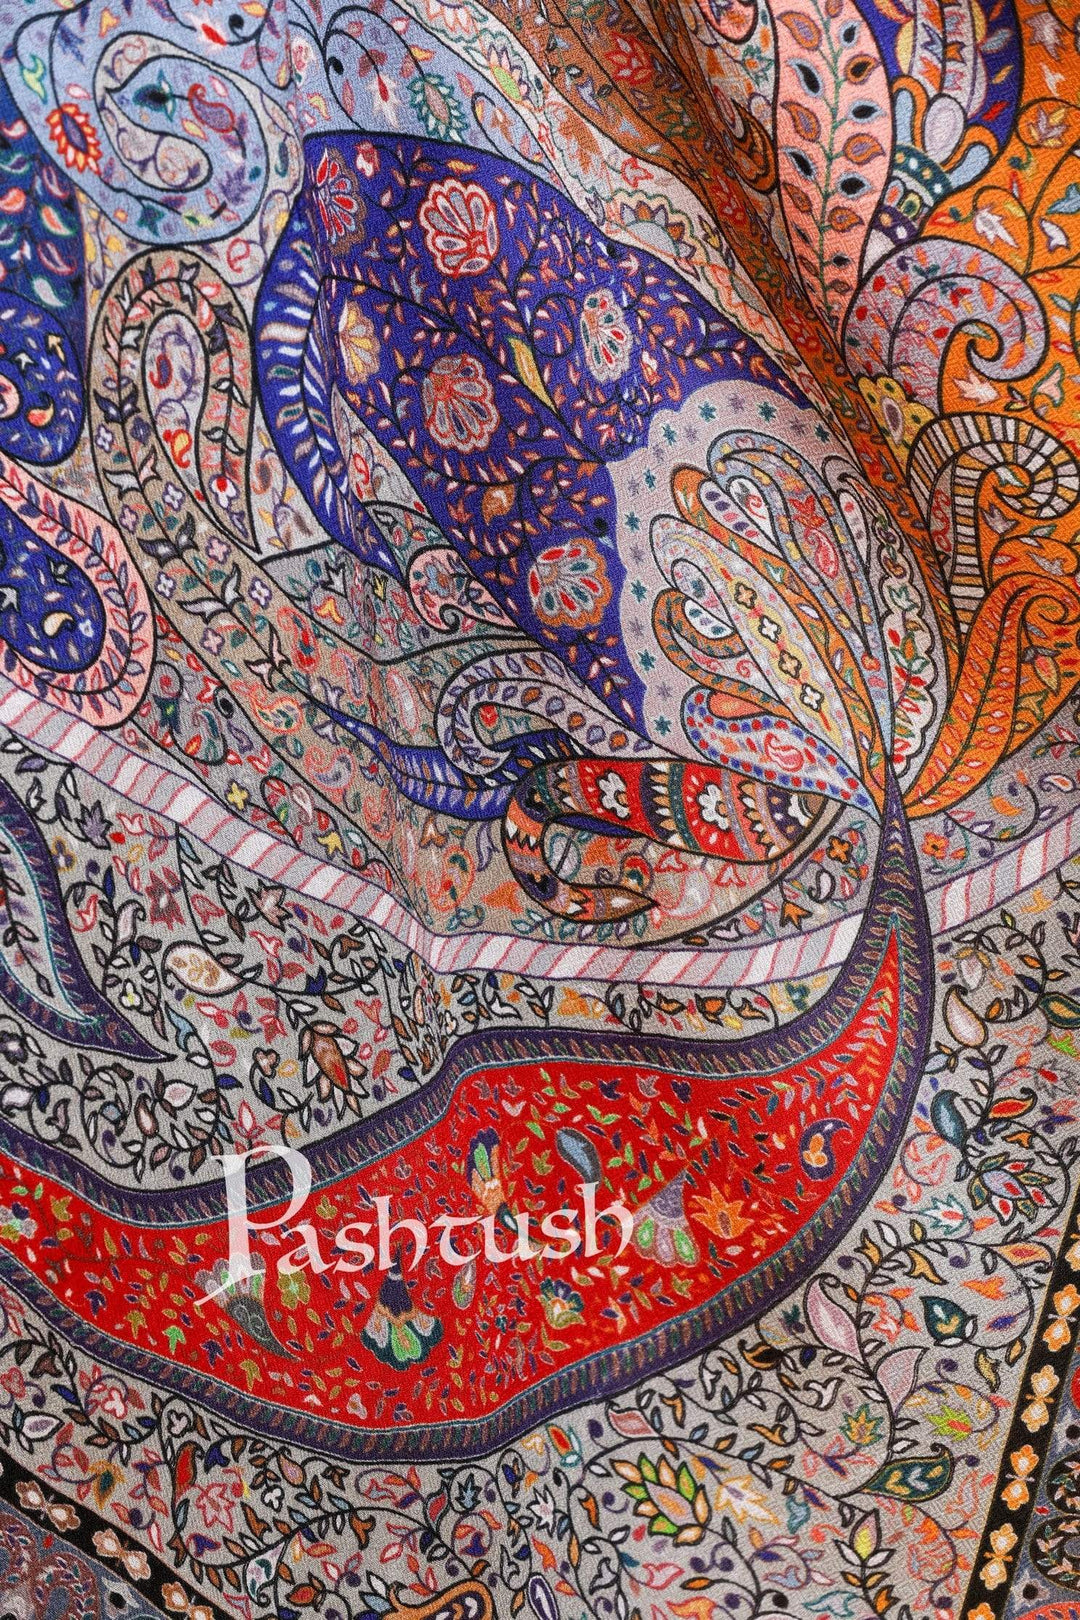 Pashtush India Stole Pashtush Women's Soft Bamboo Scarf, Casual Shawls, Stoles, Wraps, Extra Soft